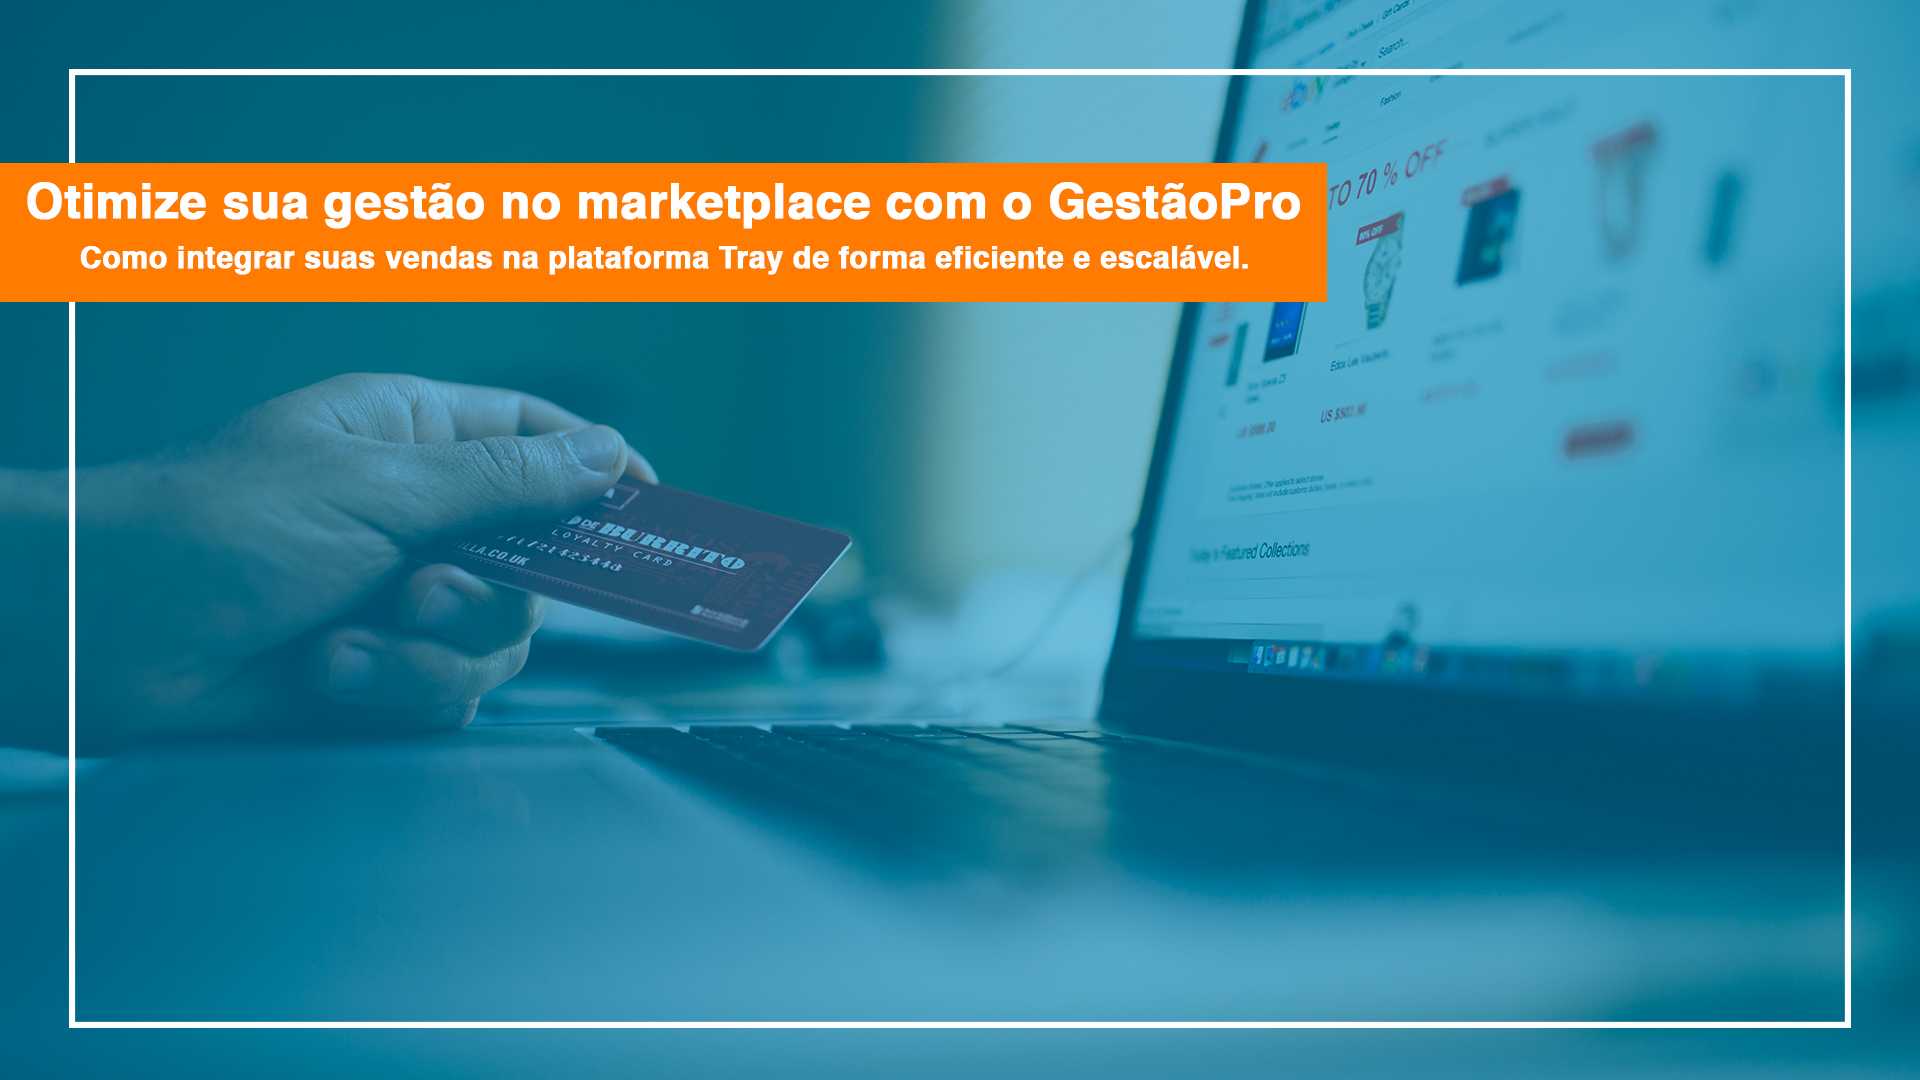 Otimize sua gestão no marketplace com o GestãoPro